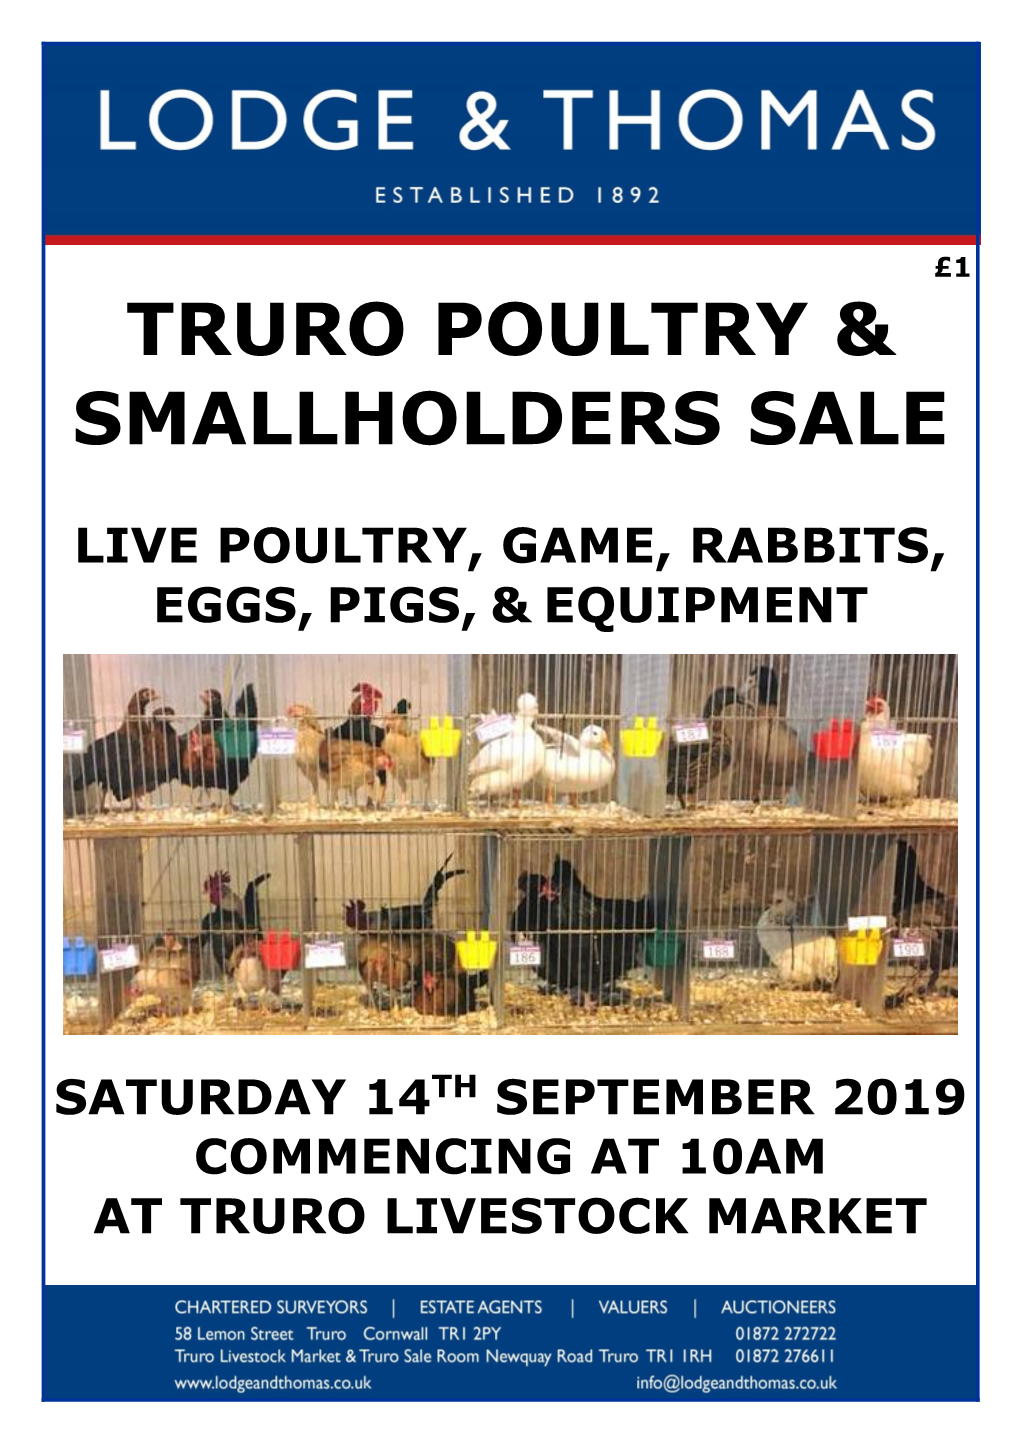 Truro Poultry & Smallholders Sale